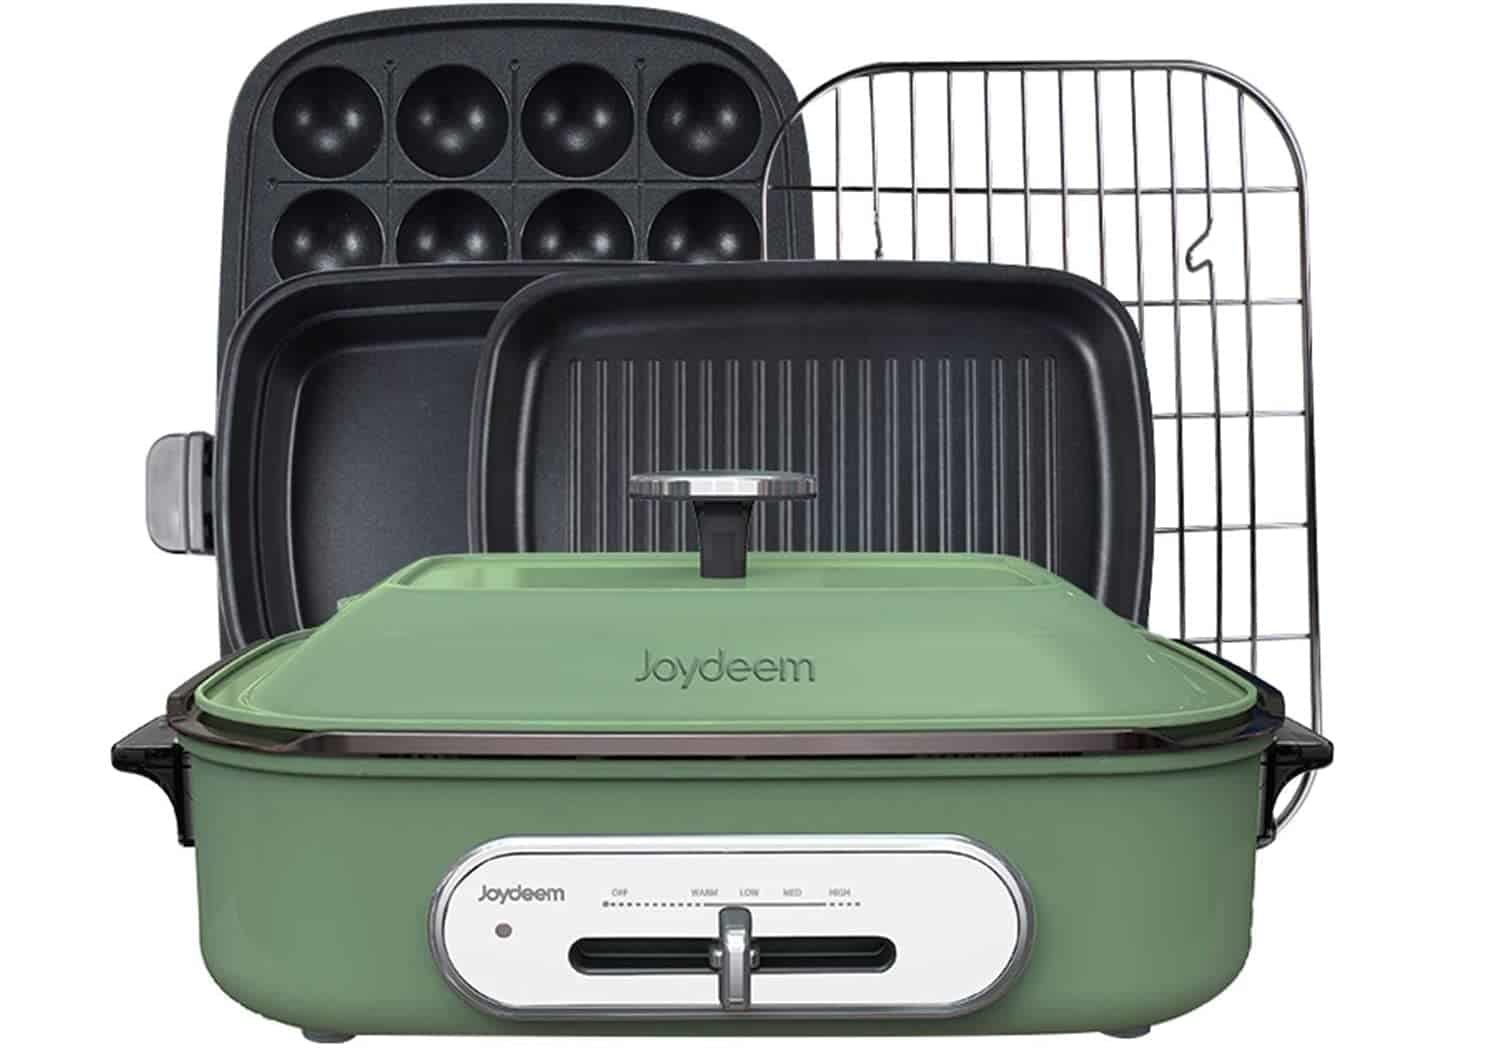 Meilleure machine de cuisson Takoyaki polyvalente: plaque chauffante compacte Joydeem